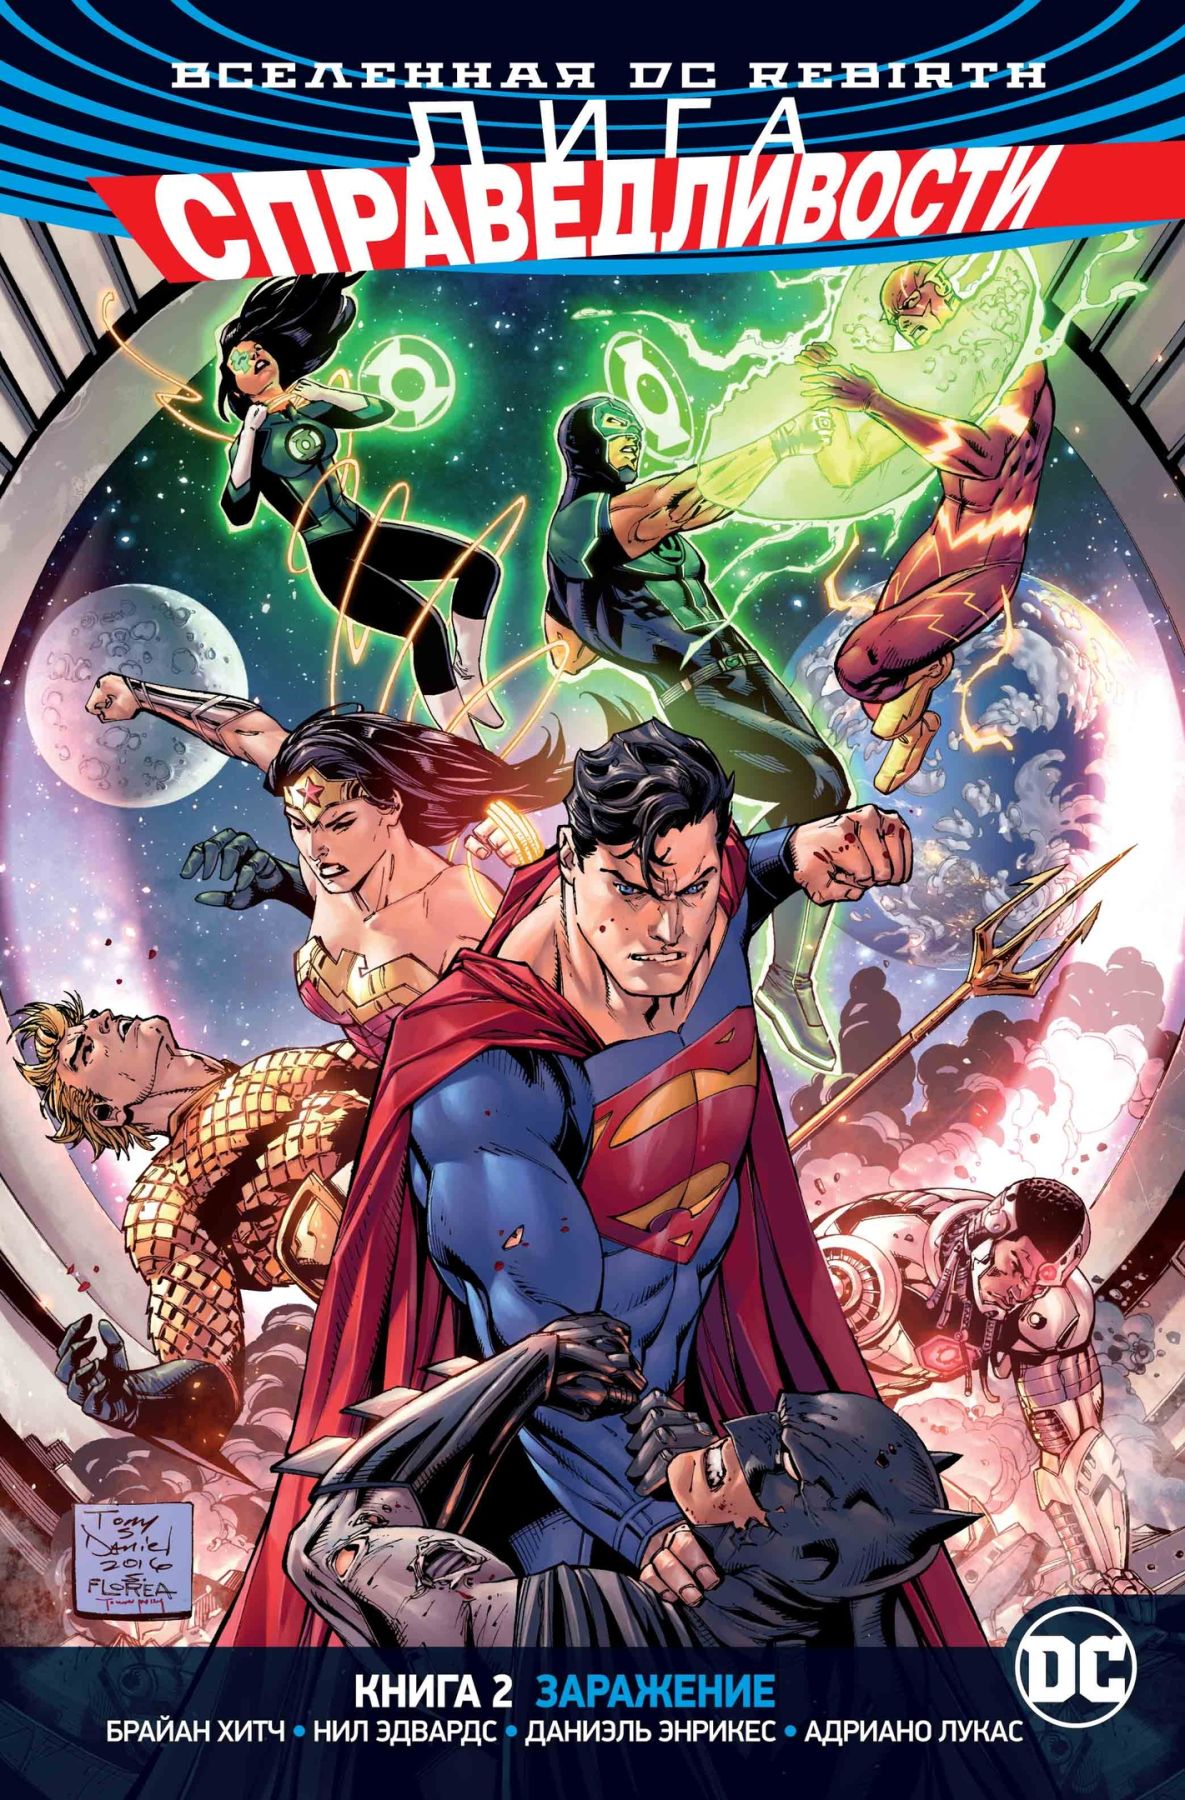 Комикс на русском языке «Вселенная DC. Rebirth. Лига Справедливости. Книга 2. Заражение»